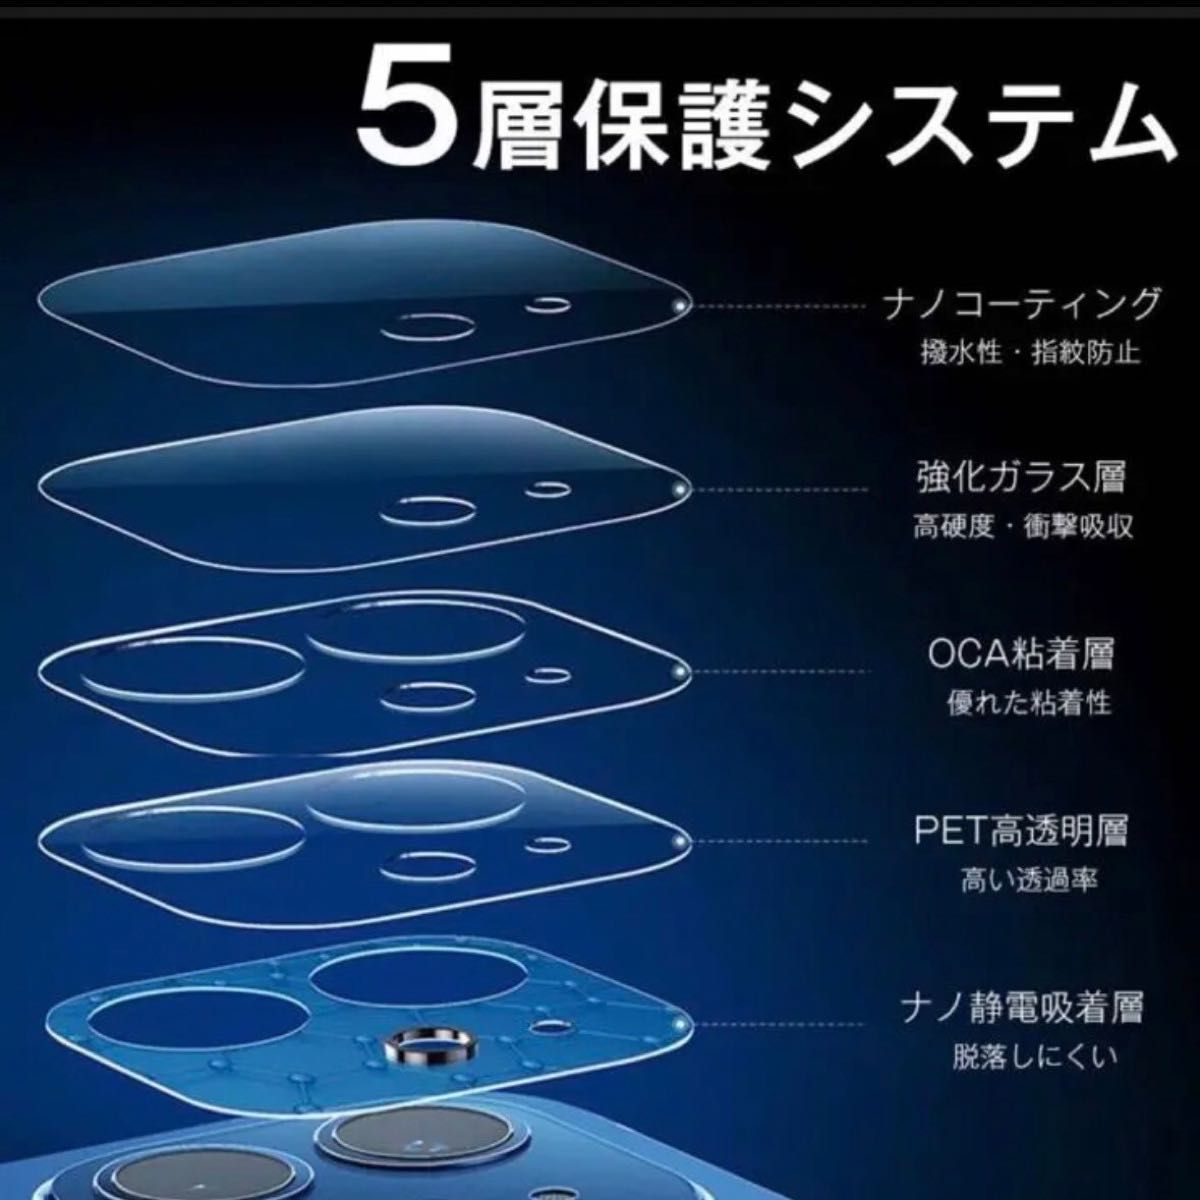 【iPhone15/15Plus】カメラ レンズ カバーガラス フィルム 保護